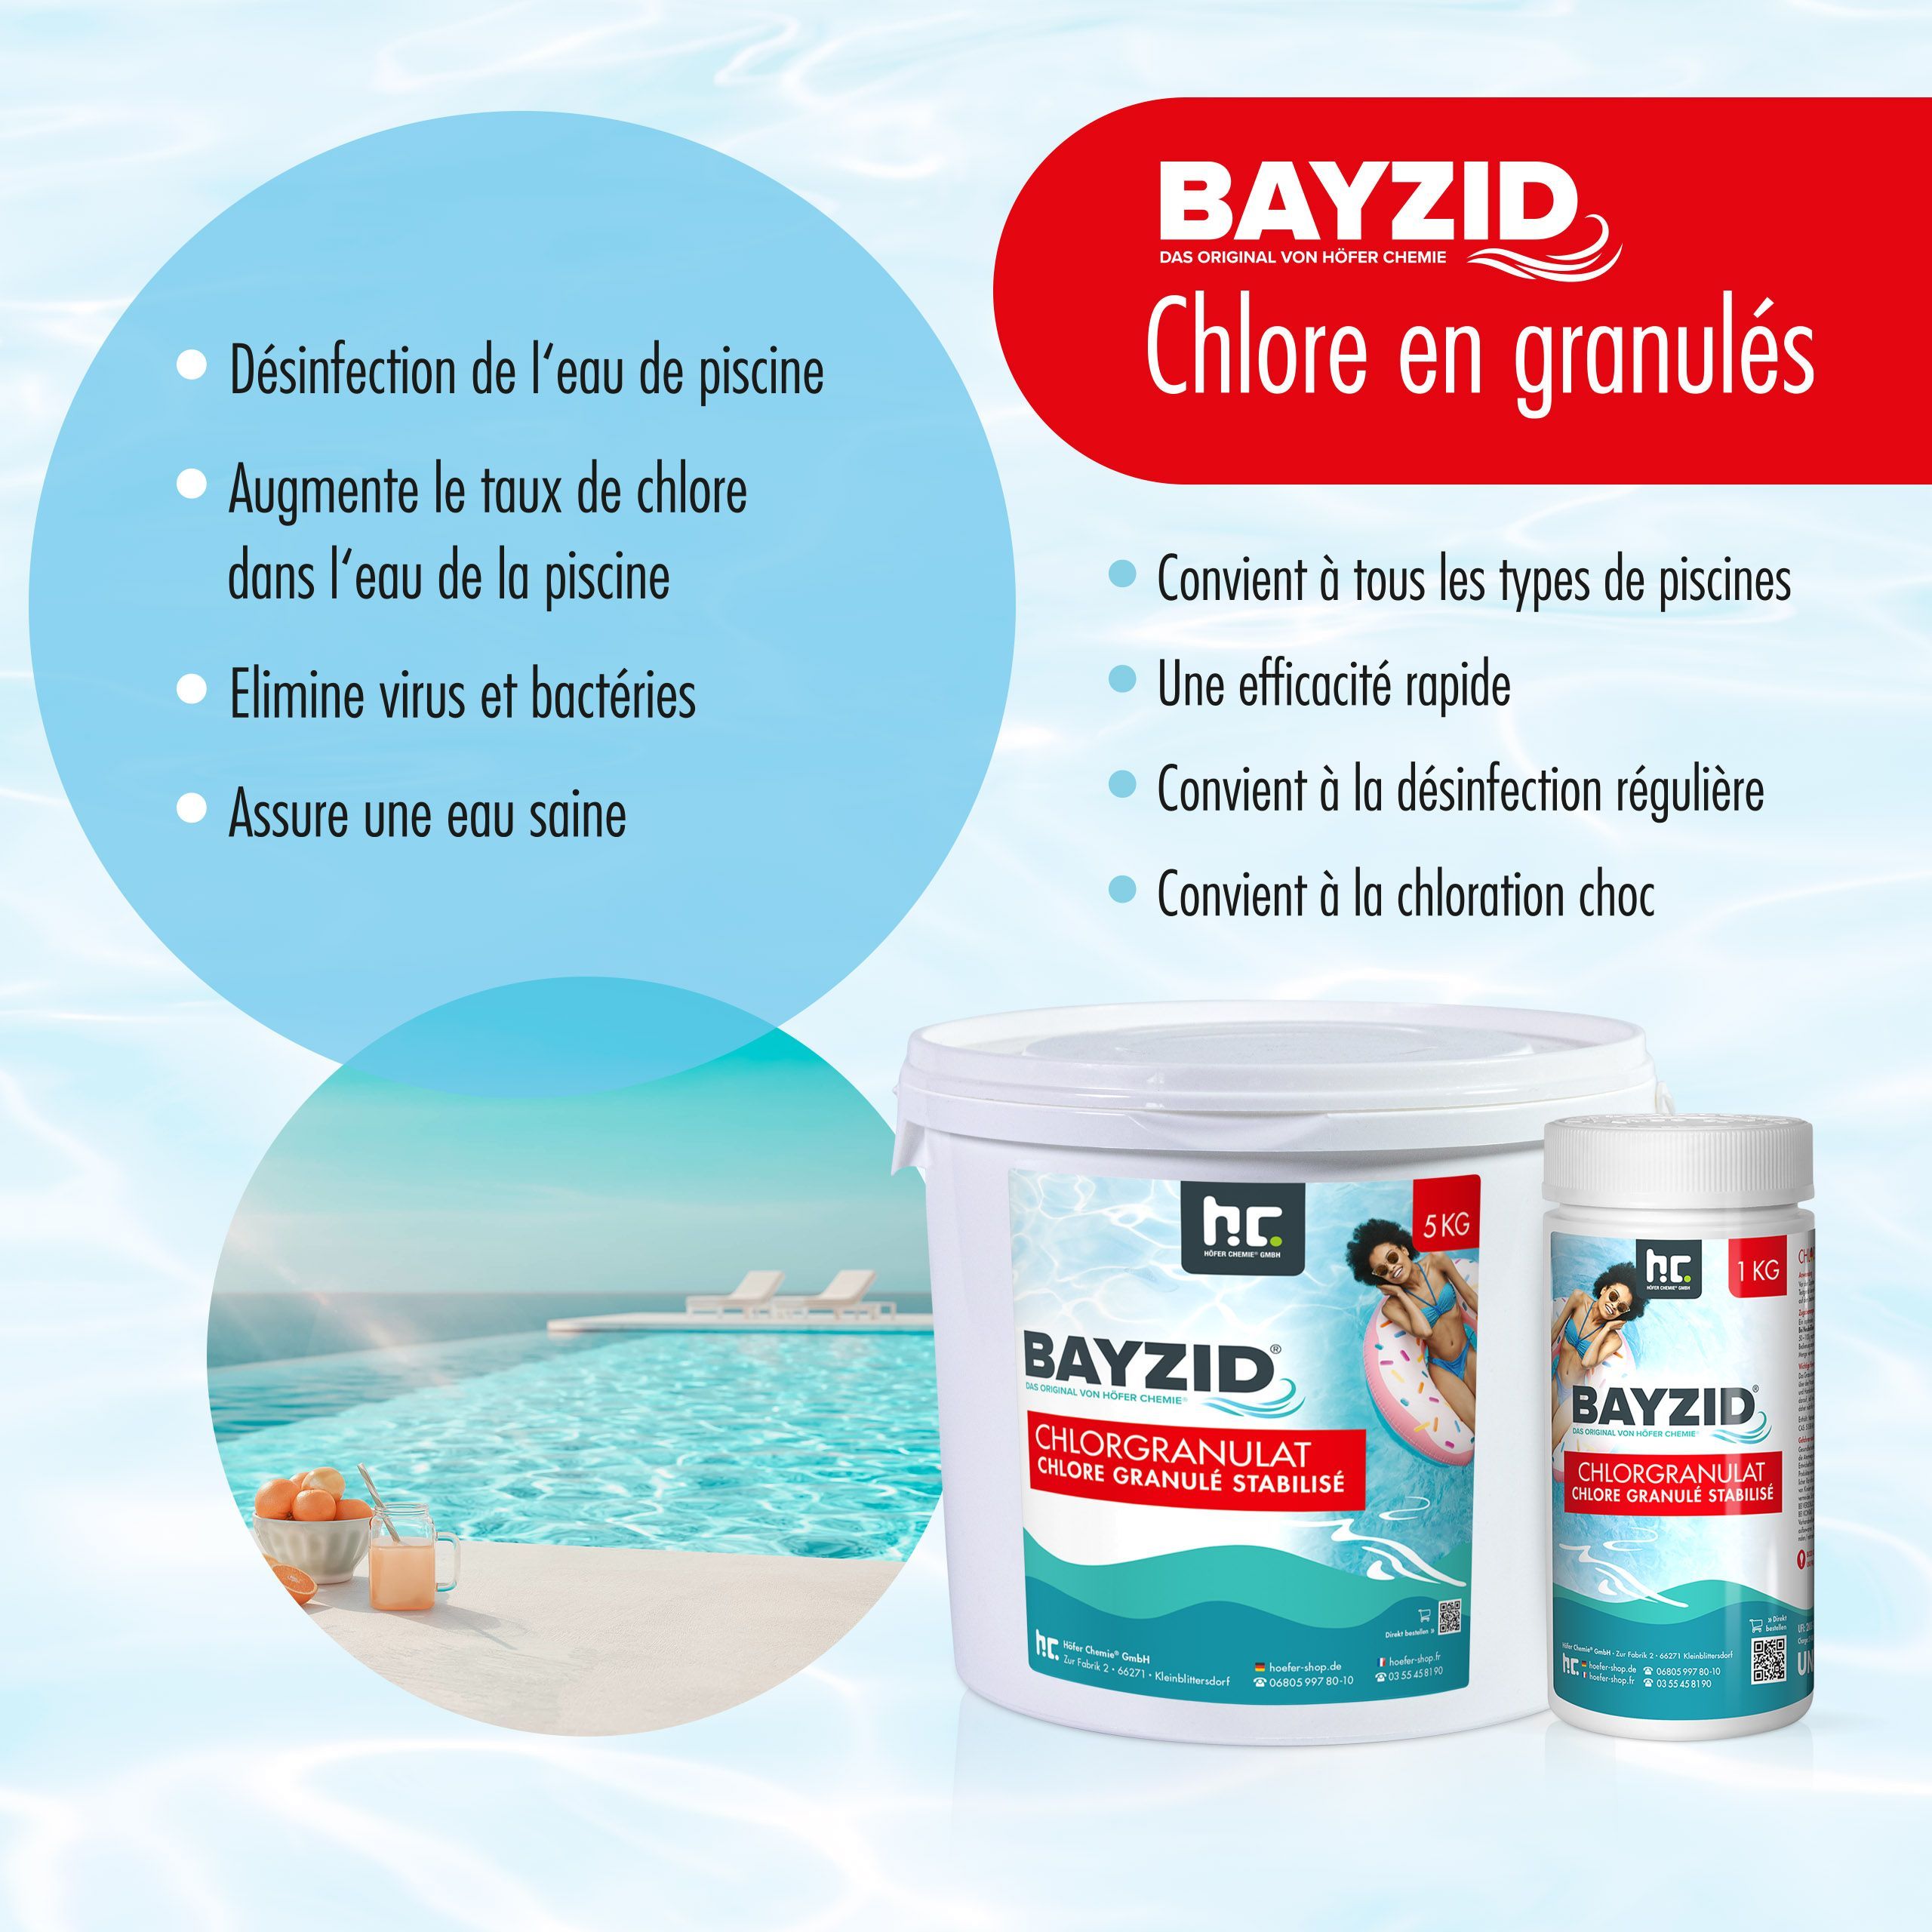 5 kg BAYZID® Chlorgranulat für Pools